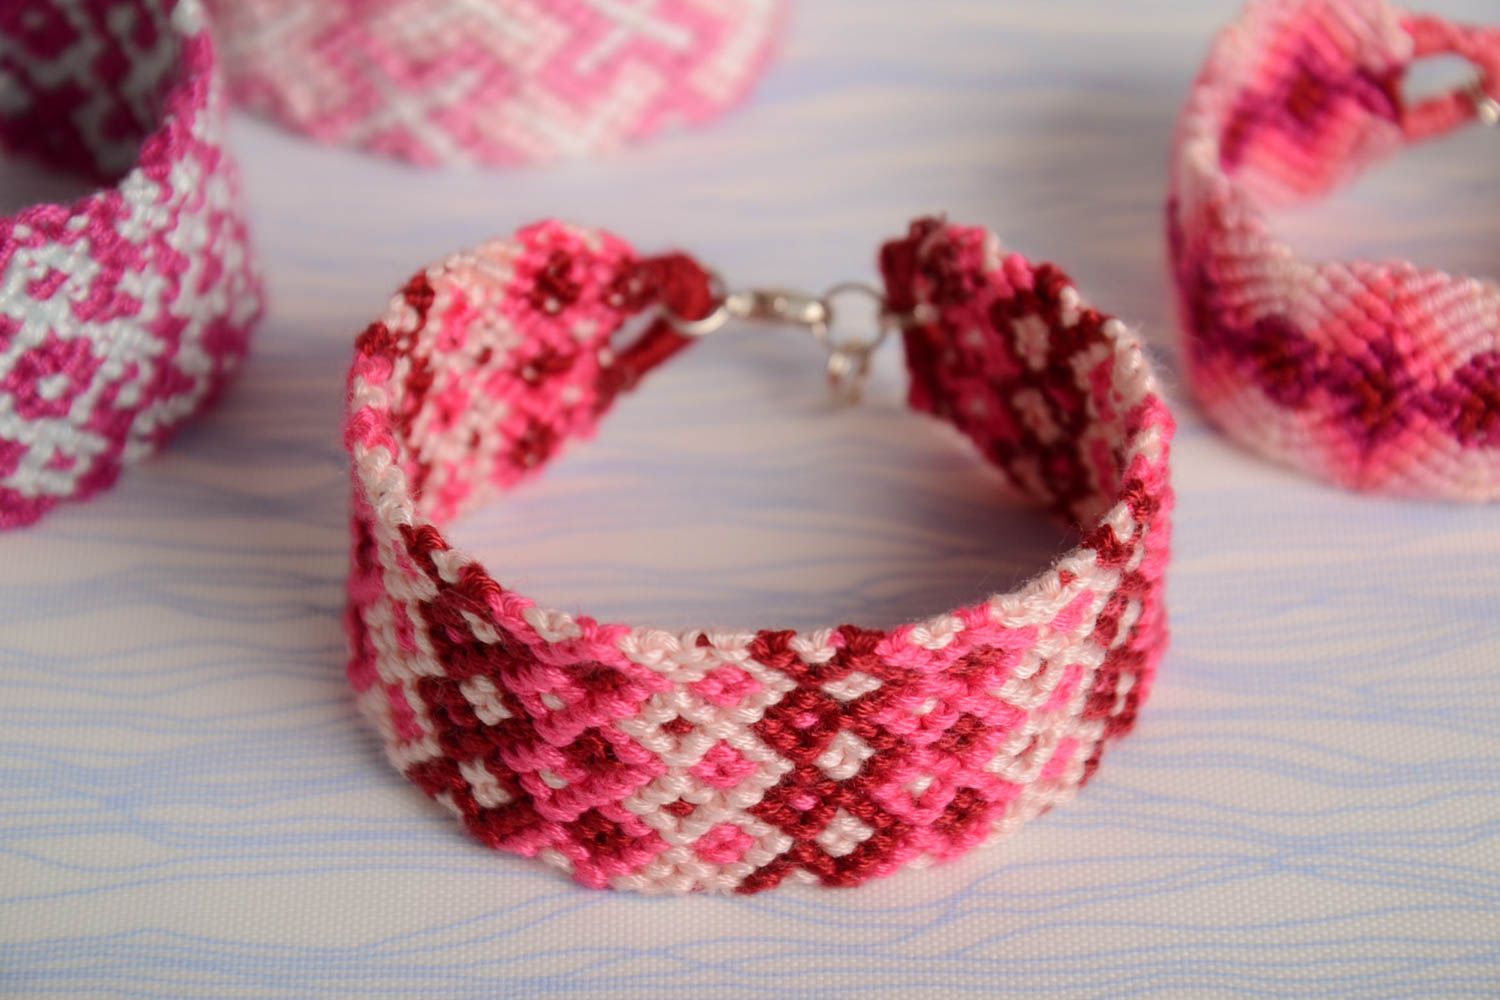 Плетеный браслет из ниток мулине ручной работы широкий красивый бордово-розовый фото 1